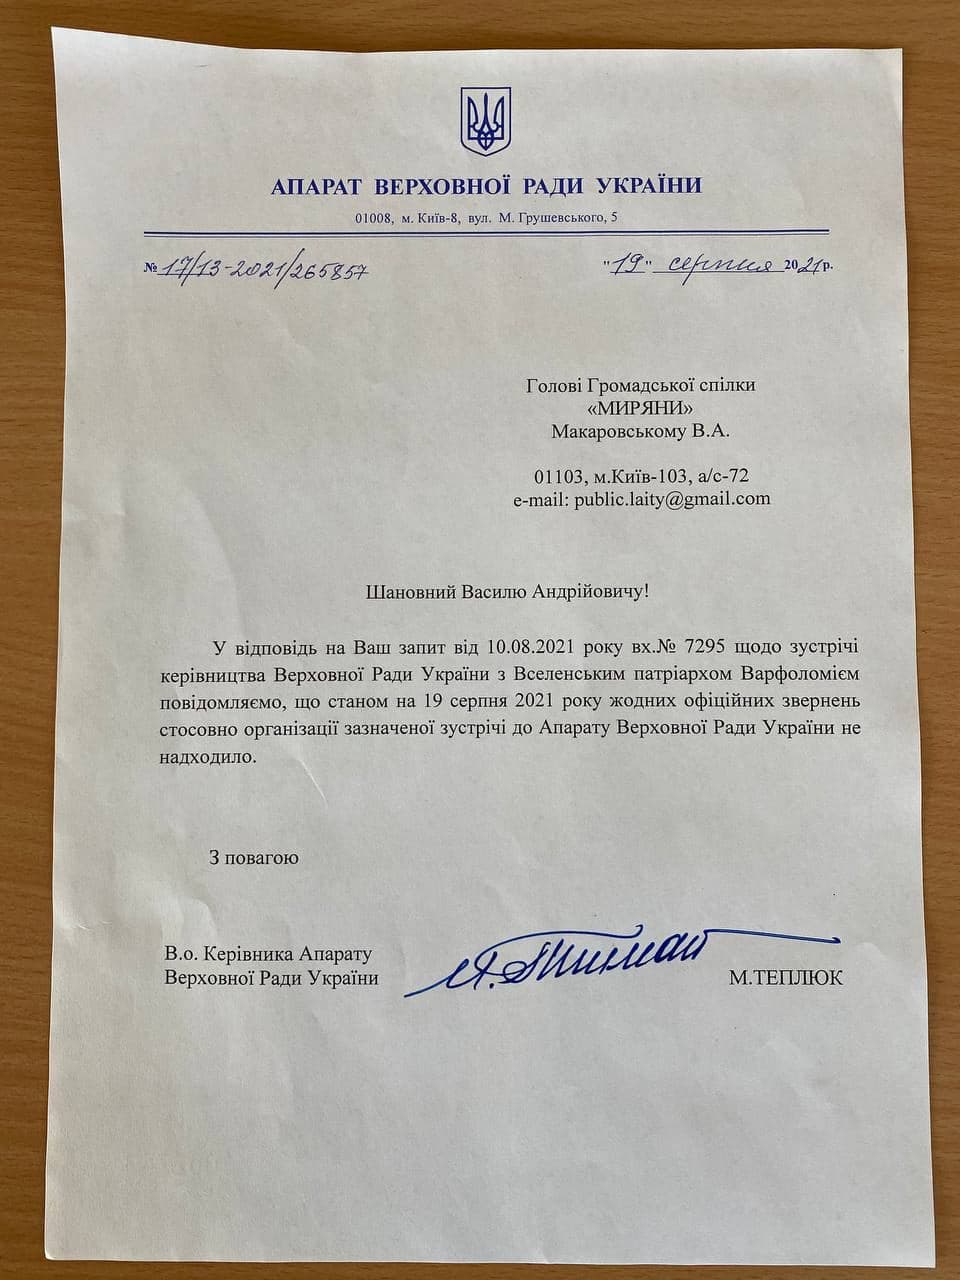 Отписка украинских властей о том, что они ничего не знают о программе визита Патриарха Варфоломея в Киев